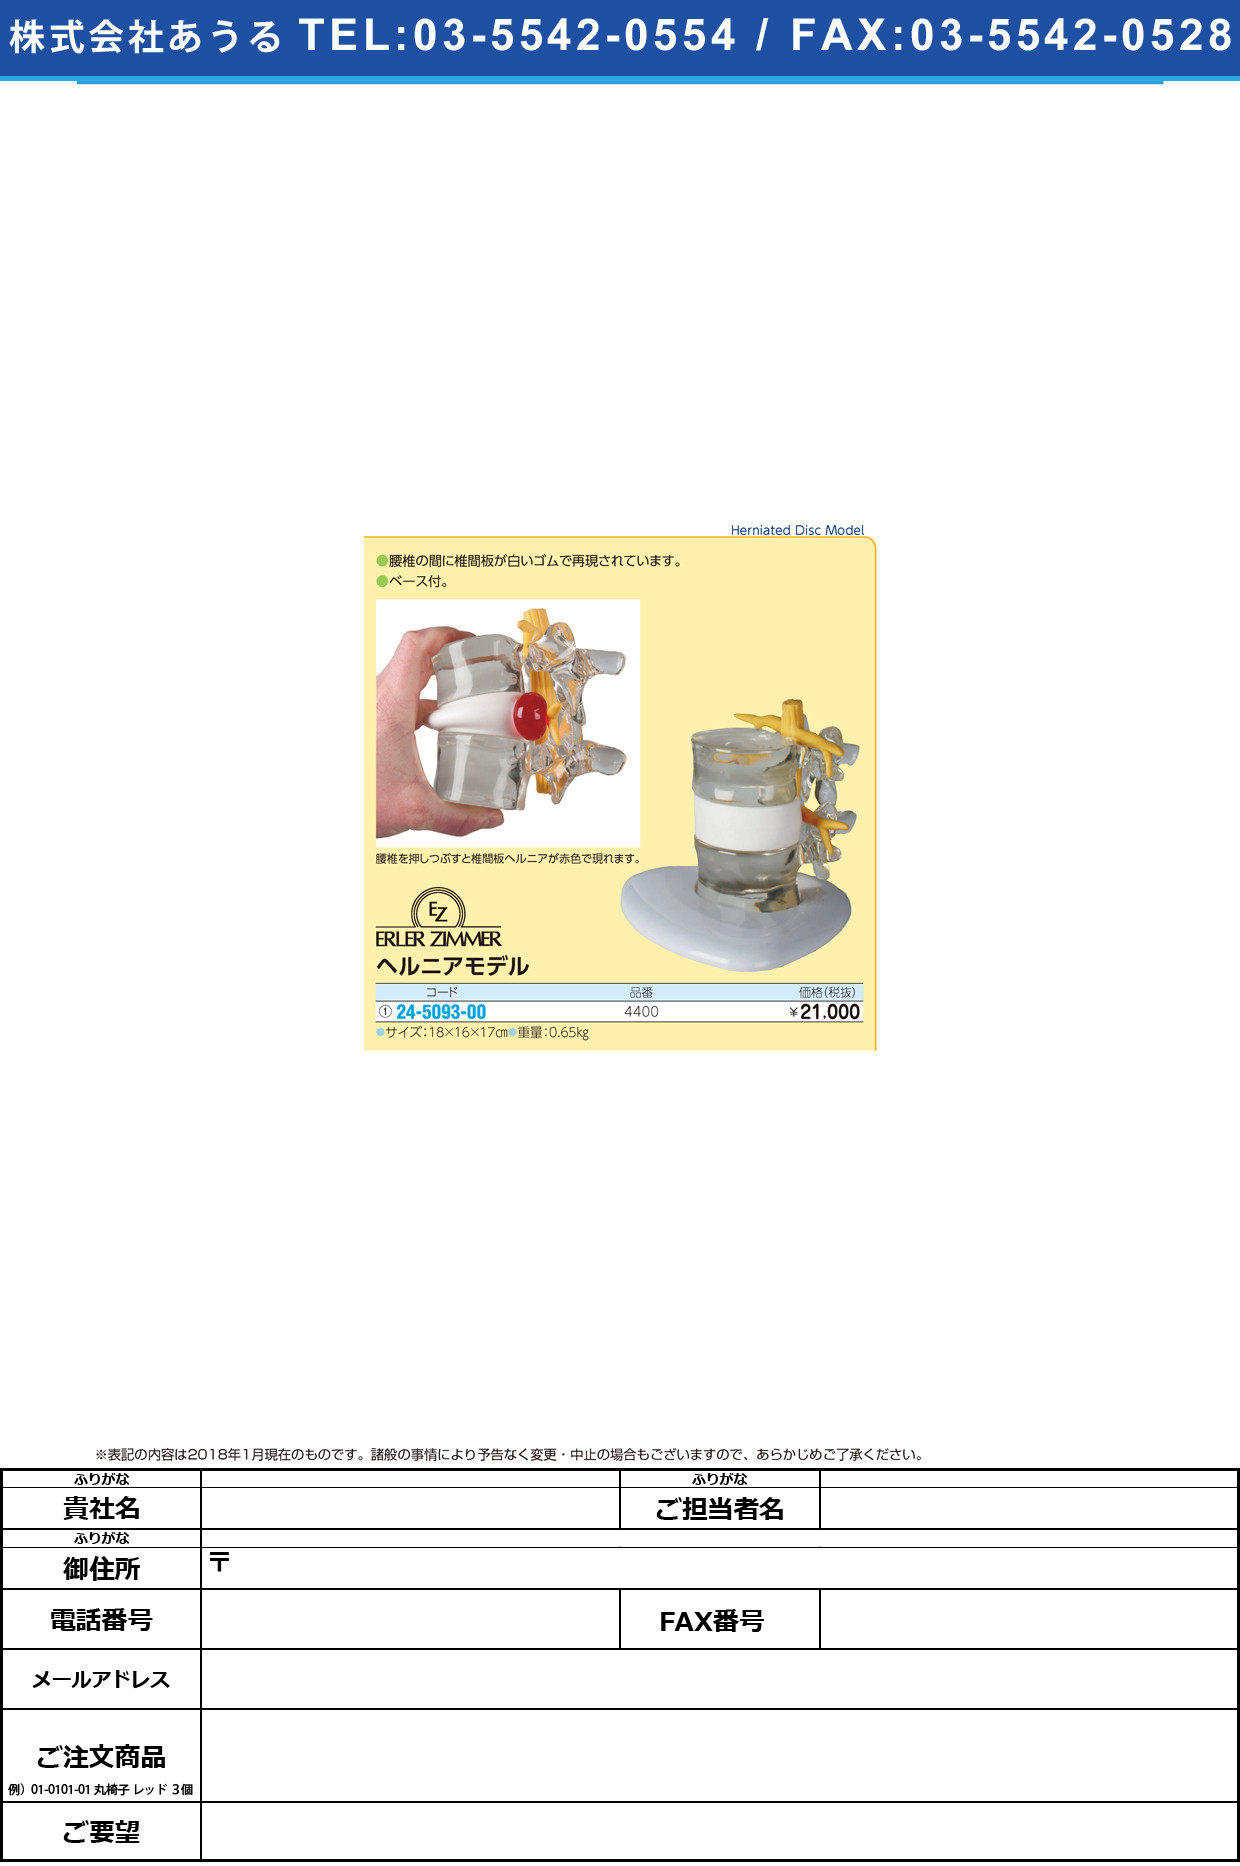 (24-5093-00)ヘルニアモデル 4400 ﾍﾙﾆｱﾓﾃﾞﾙ(エルラージーマー社)【1個単位】【2018年カタログ商品】